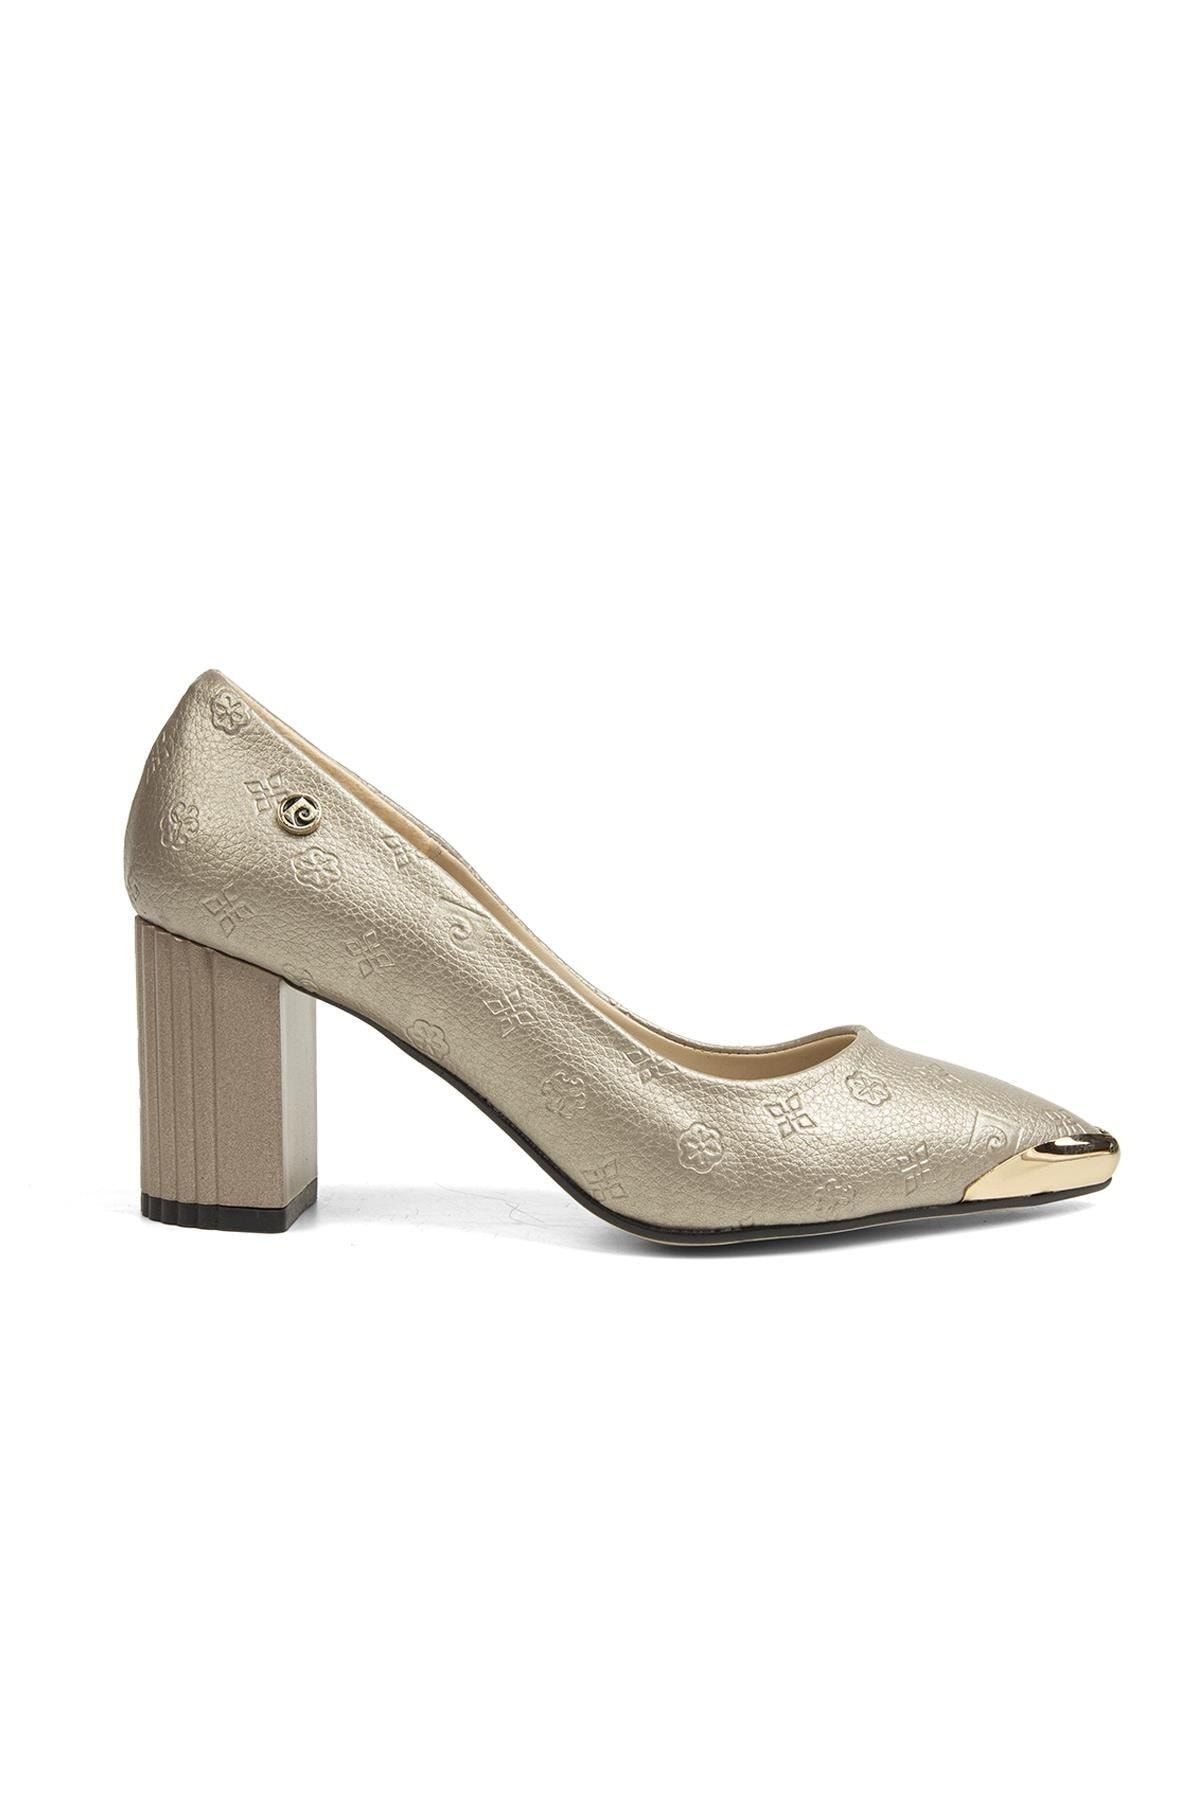 Pierre Cardin ® | Pc-51644 - 3478 Altın Baskılı - Kadın Topuklu Ayakkabı